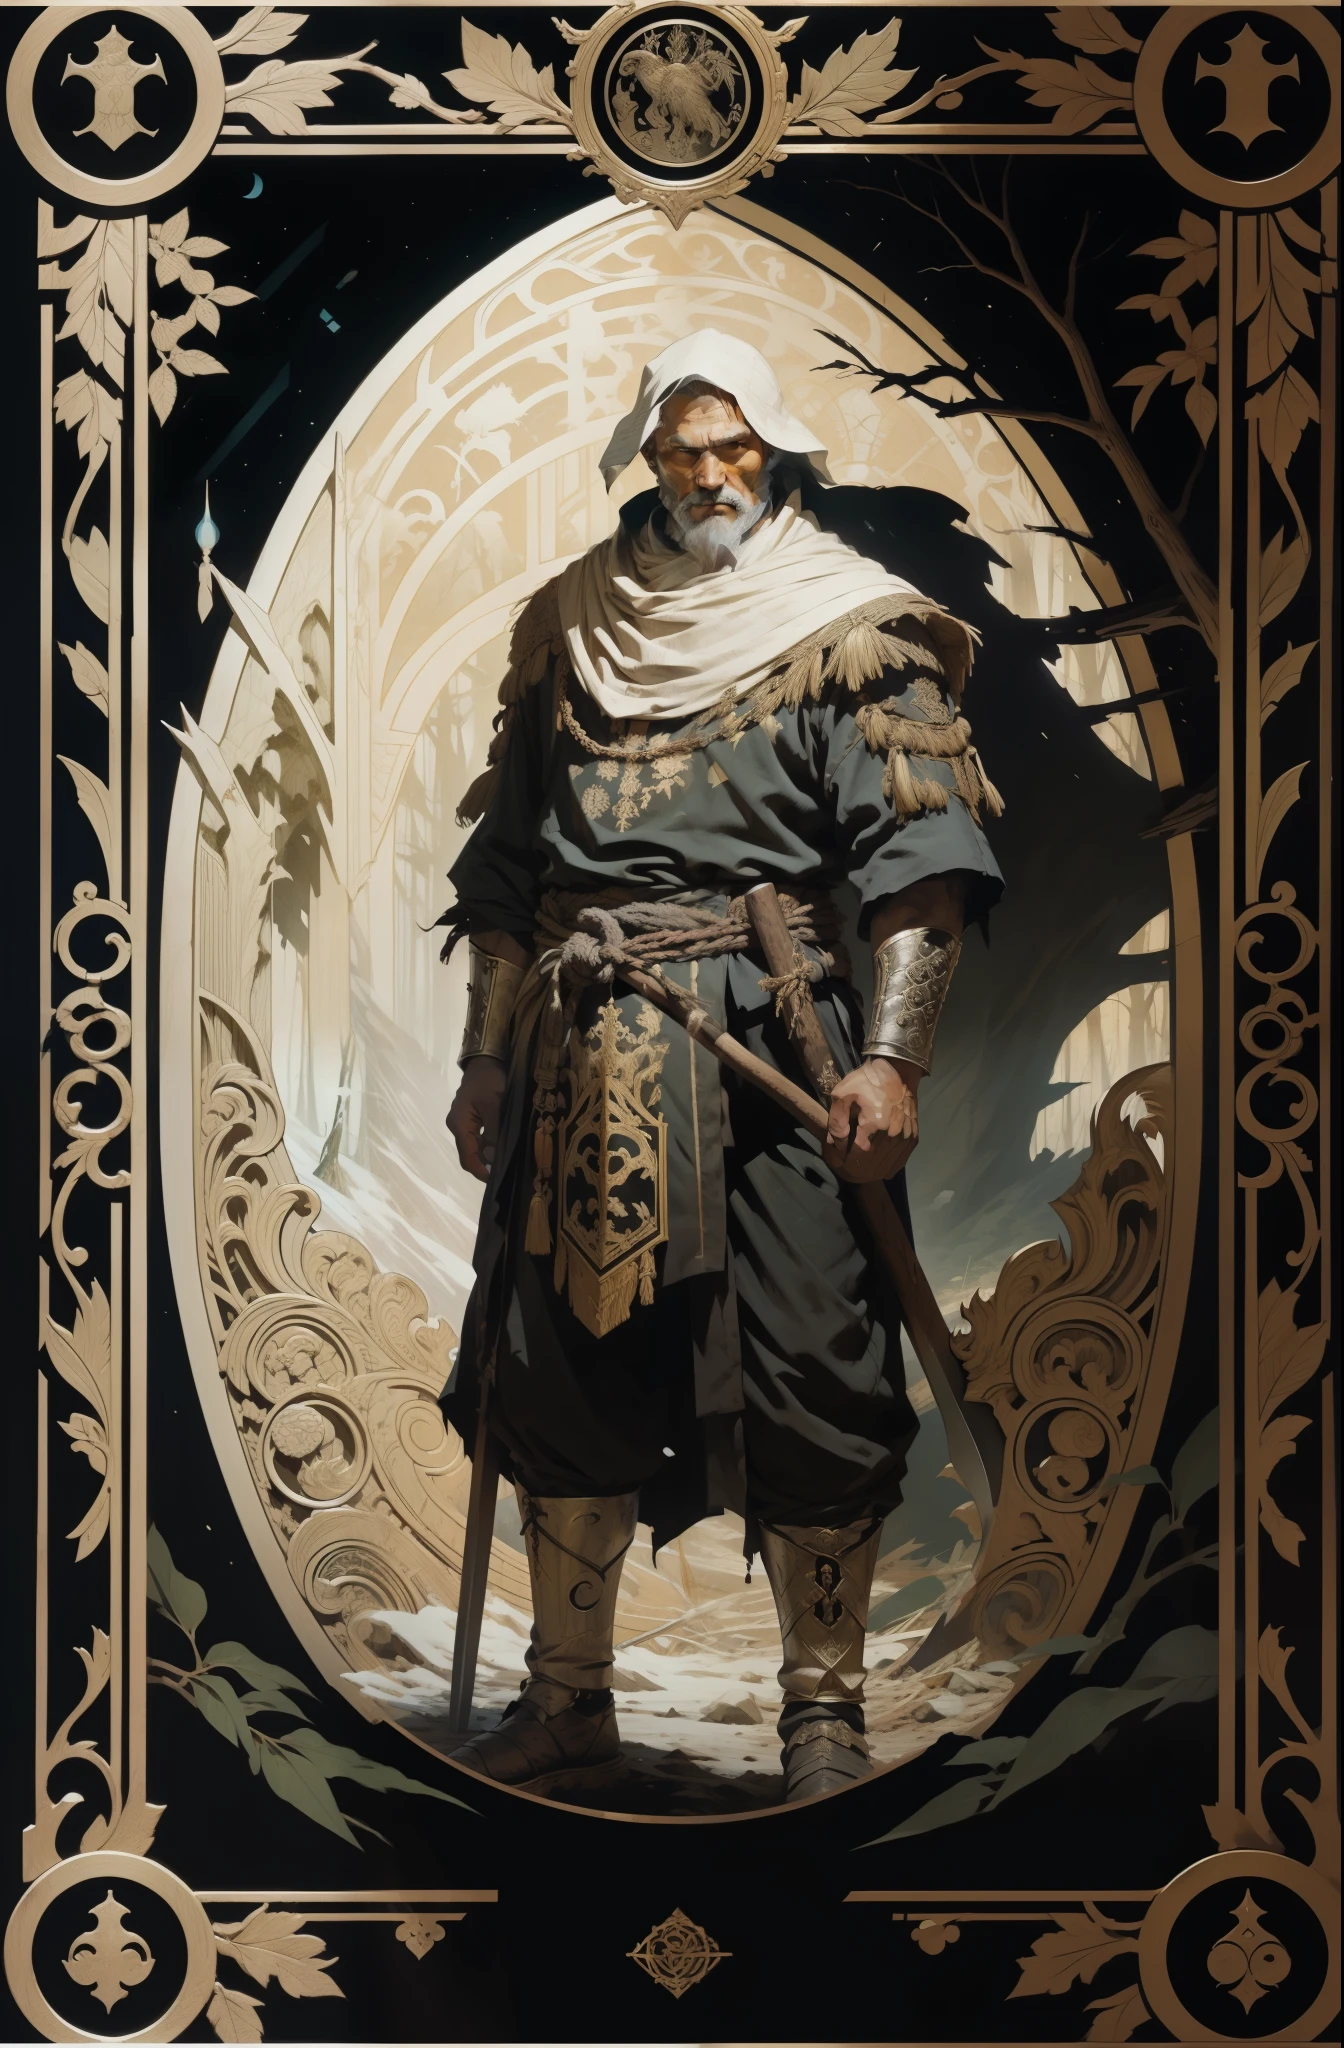 hombre, con ropas tradicionales de los pueblos del norte, con un hacha en sus manos, fondo del bosque oscuro, estilo tarot, marco con dibujos medievales